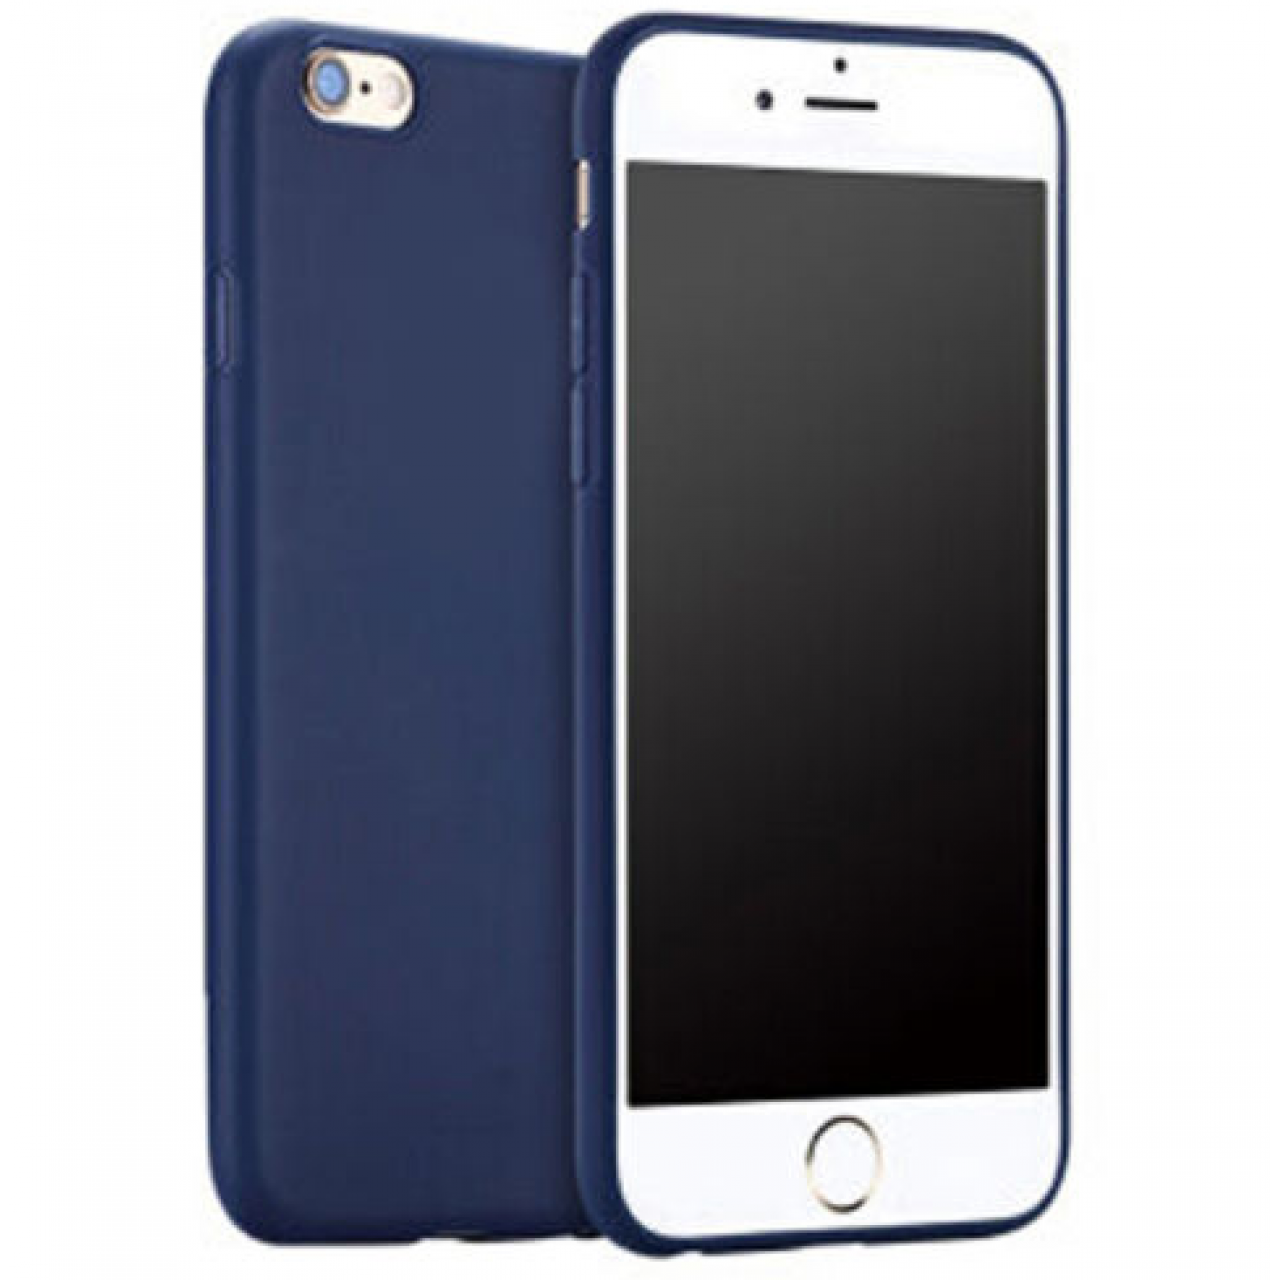 Θήκη iphone 6 plus Σιλικόνης Ματ TPU Candy Χωρίς τρύπα στο σήμα - 3754 - Σκούρο Μπλε - OEM